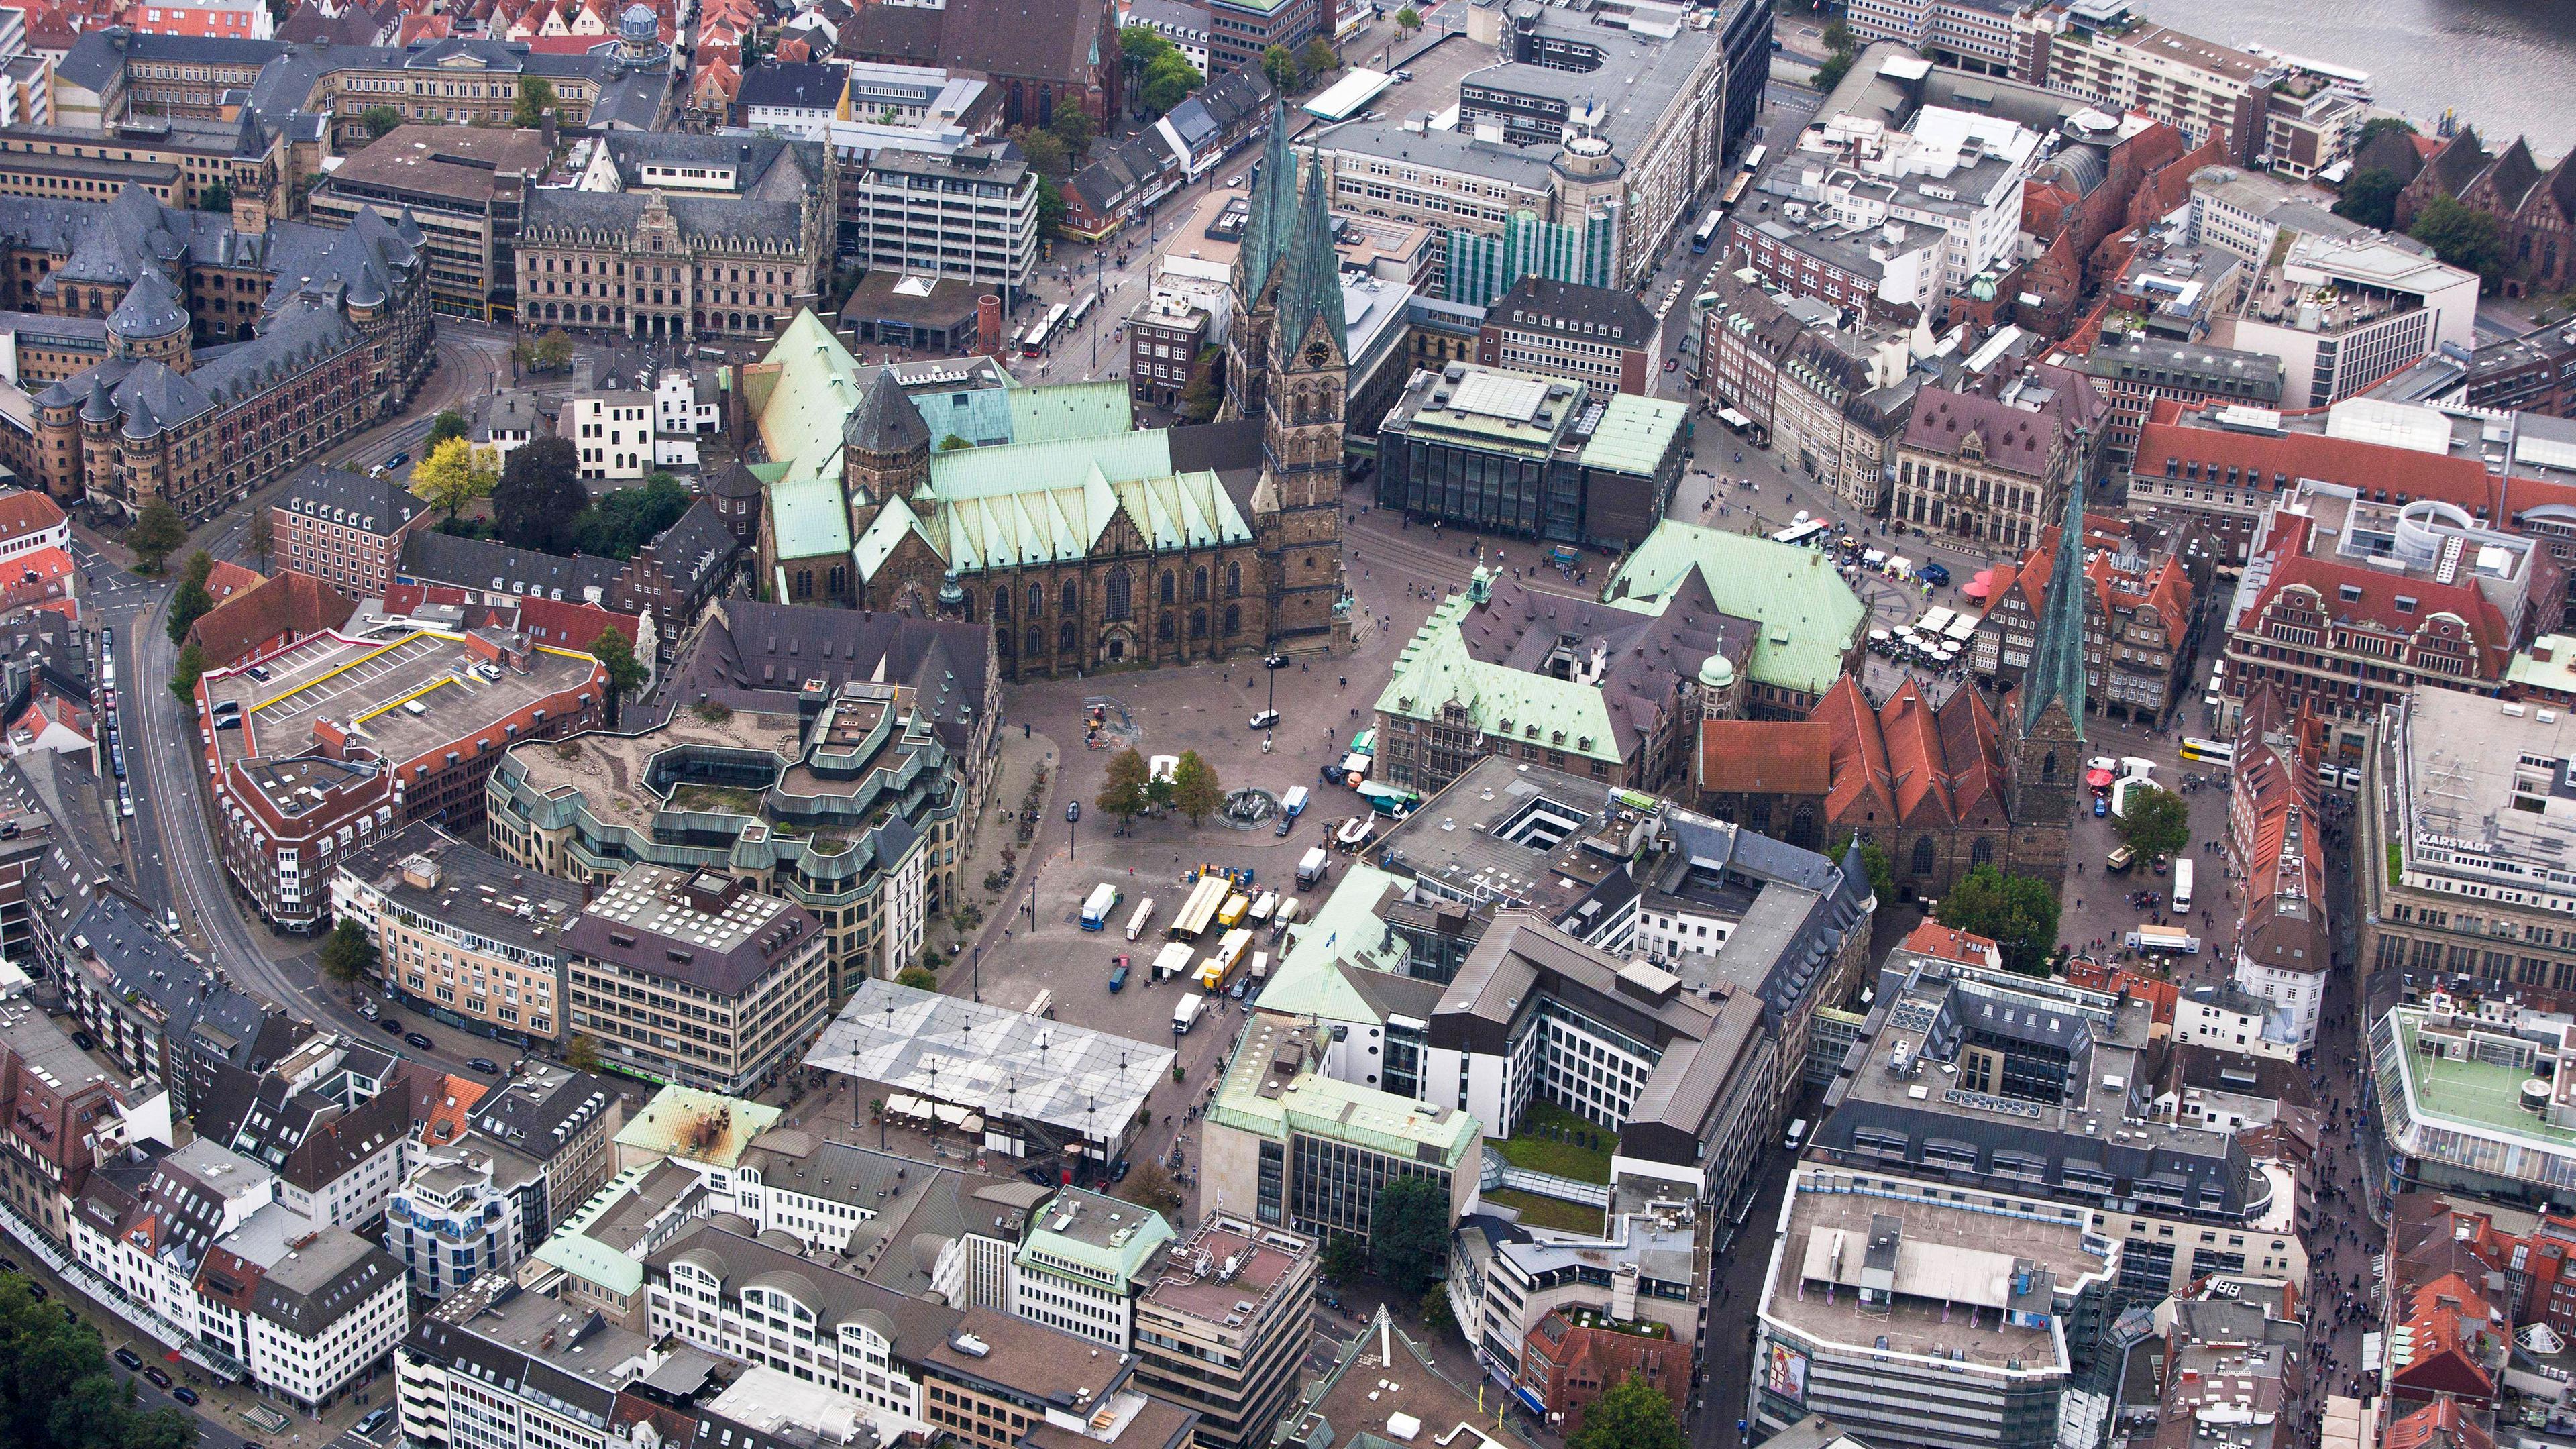 Die Luftaufnahme zeigt die Innenstadt von Bremen, aufgenommen am 18.11.2011